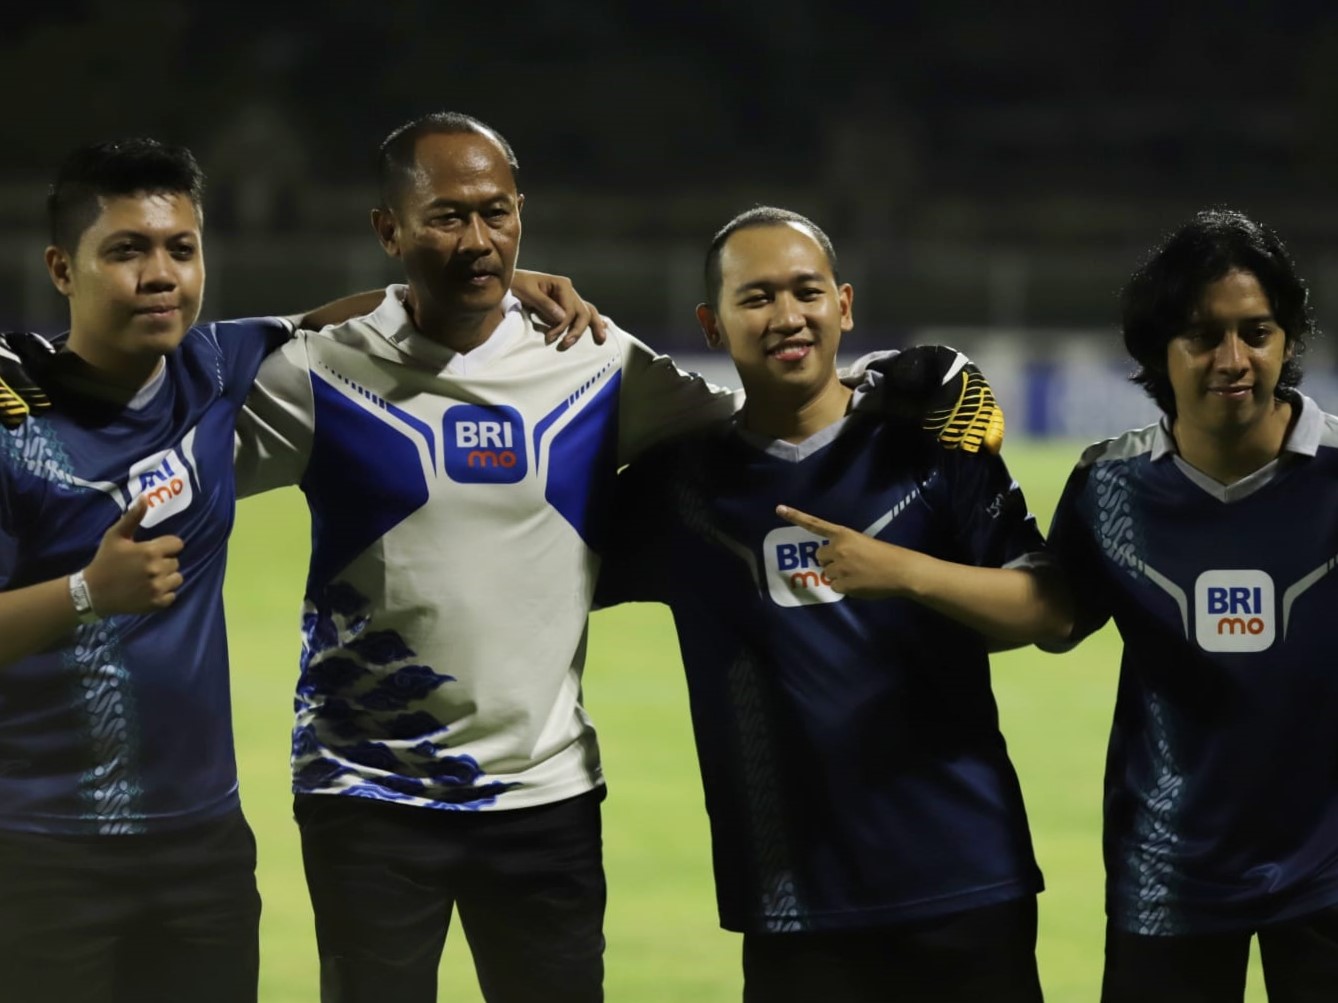 Unggah Video BRIMo, Gratis ke Bali Hingga Ikut Tendangan Penalty di BRI Liga 1